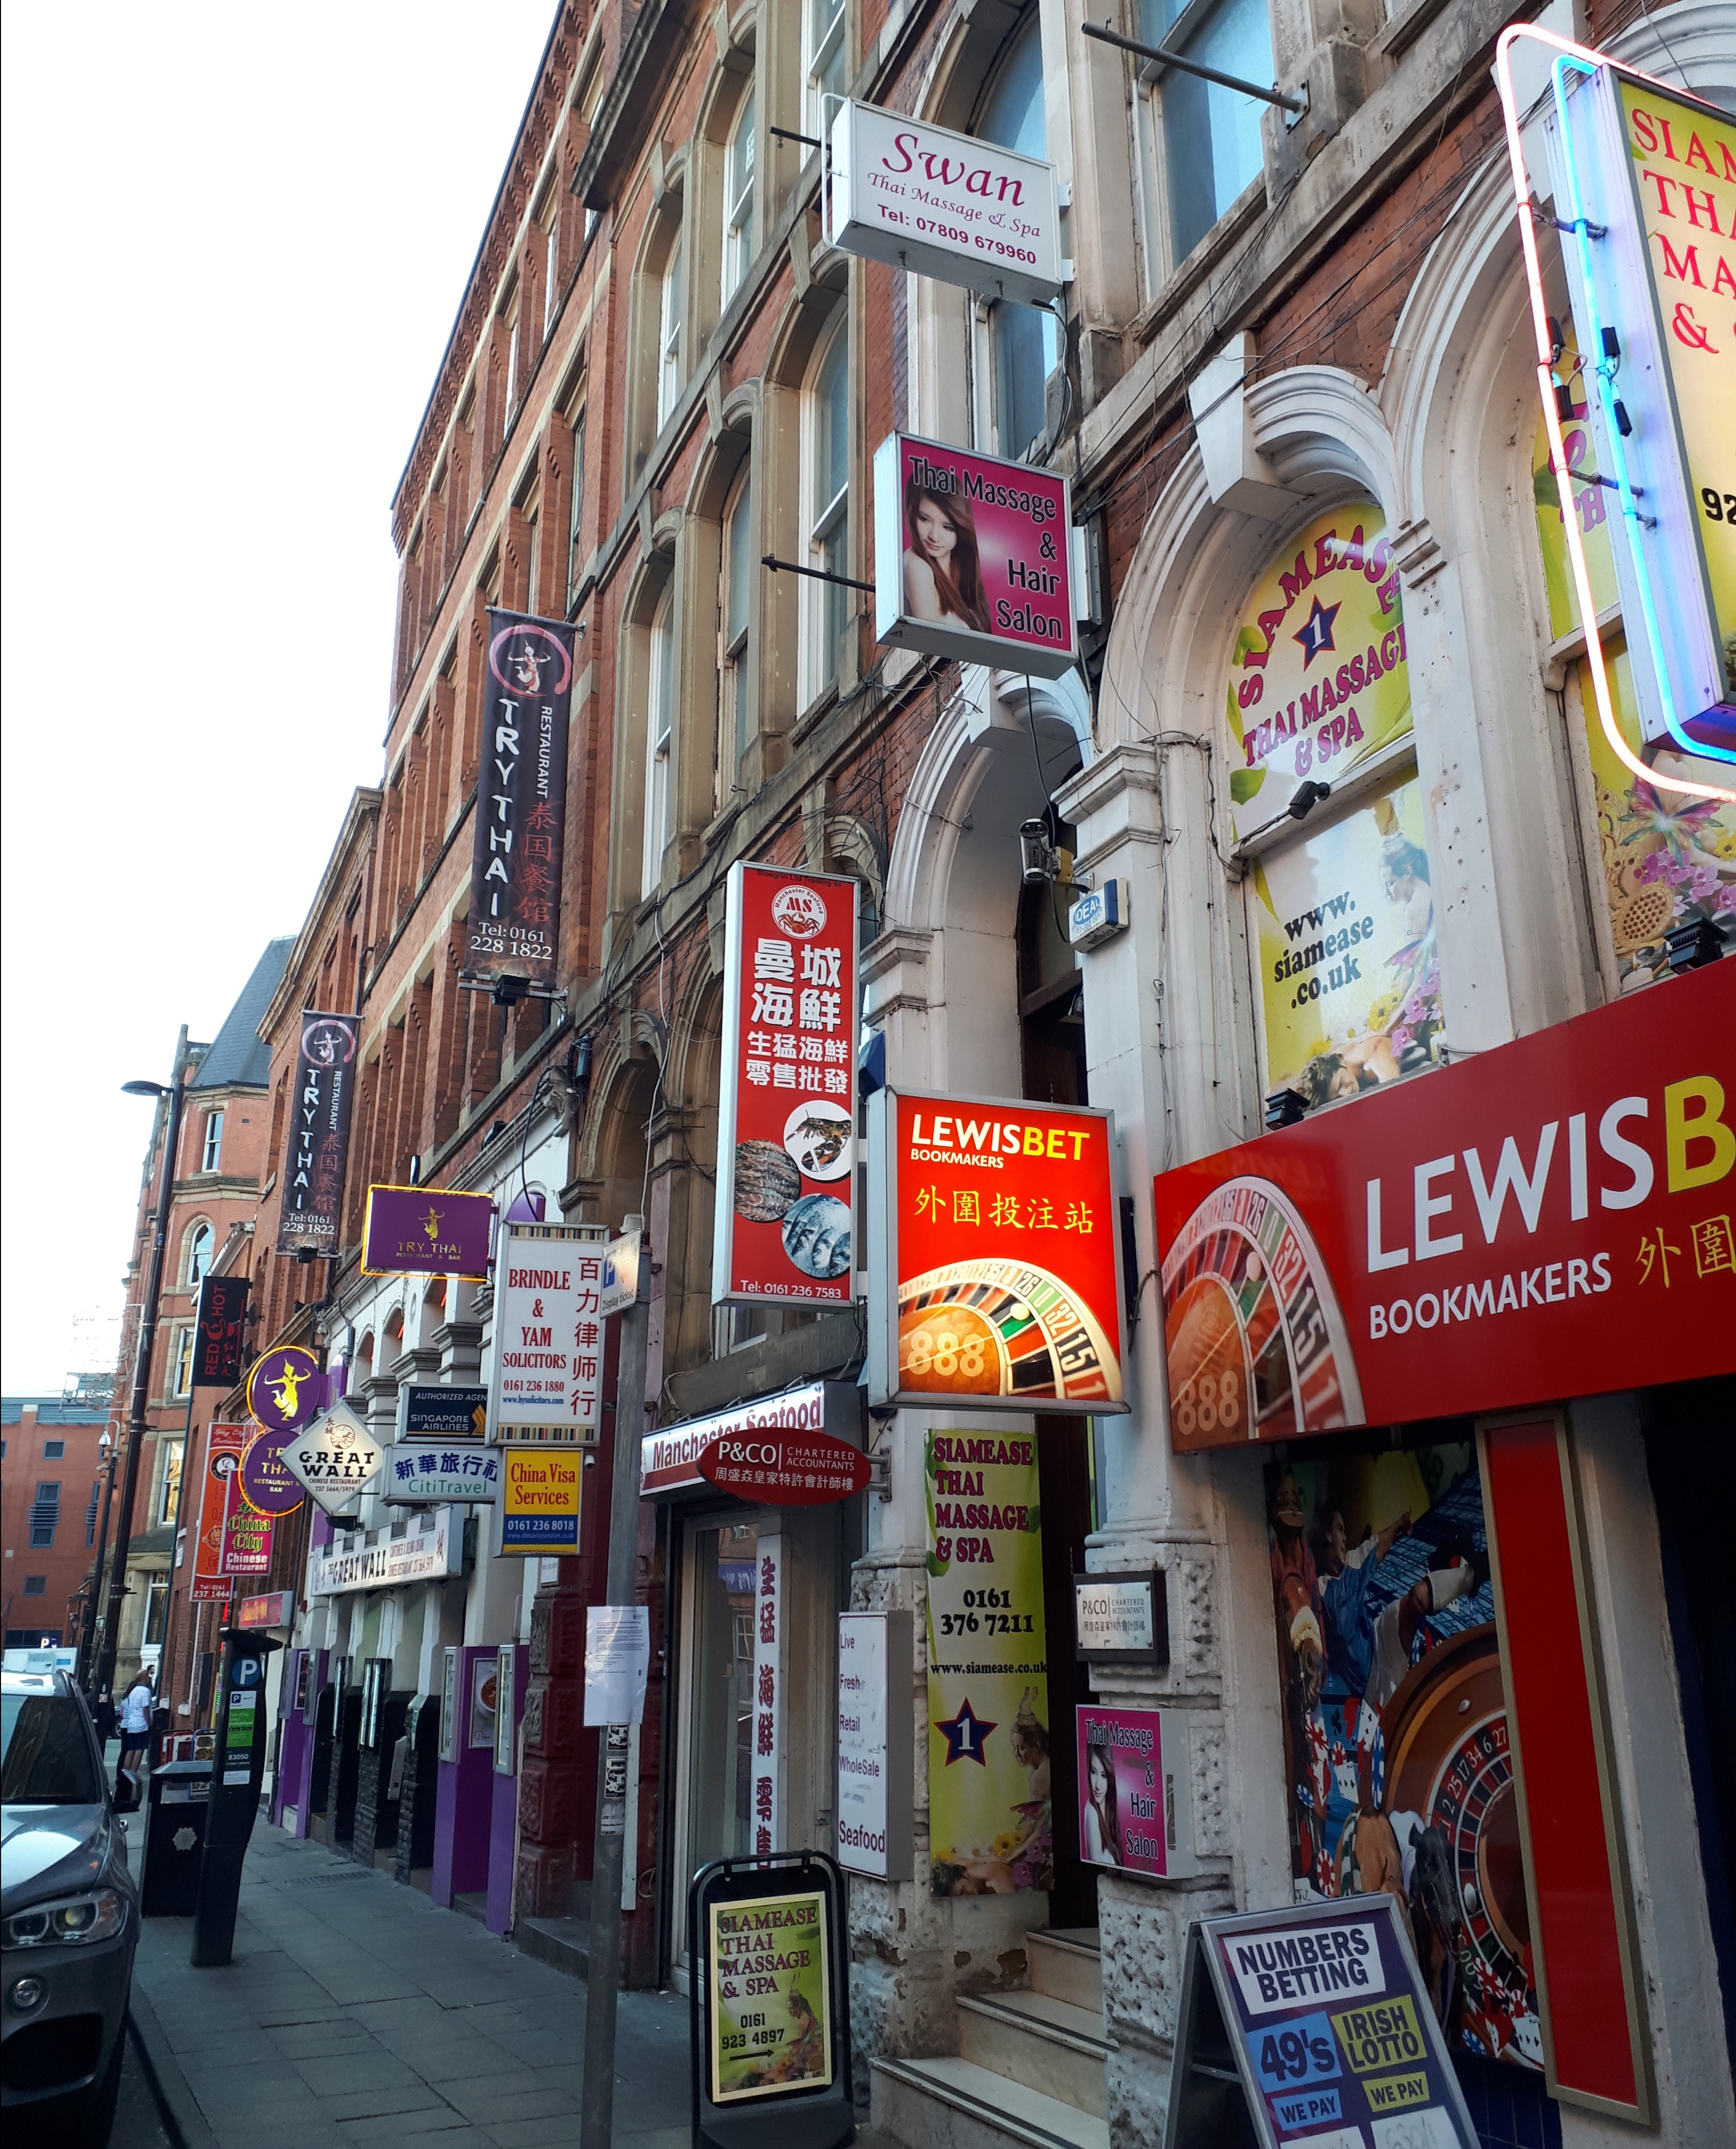 Recorrer las calles de China Town es uno de los imprescindibles que ver y hacer en Manchester.